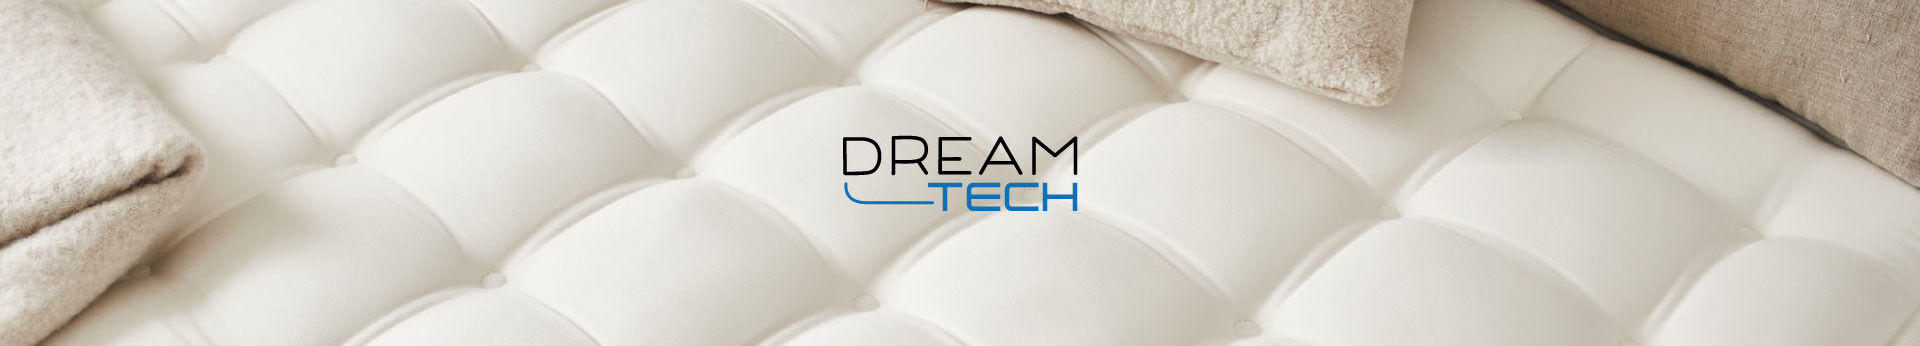 Dreamtech